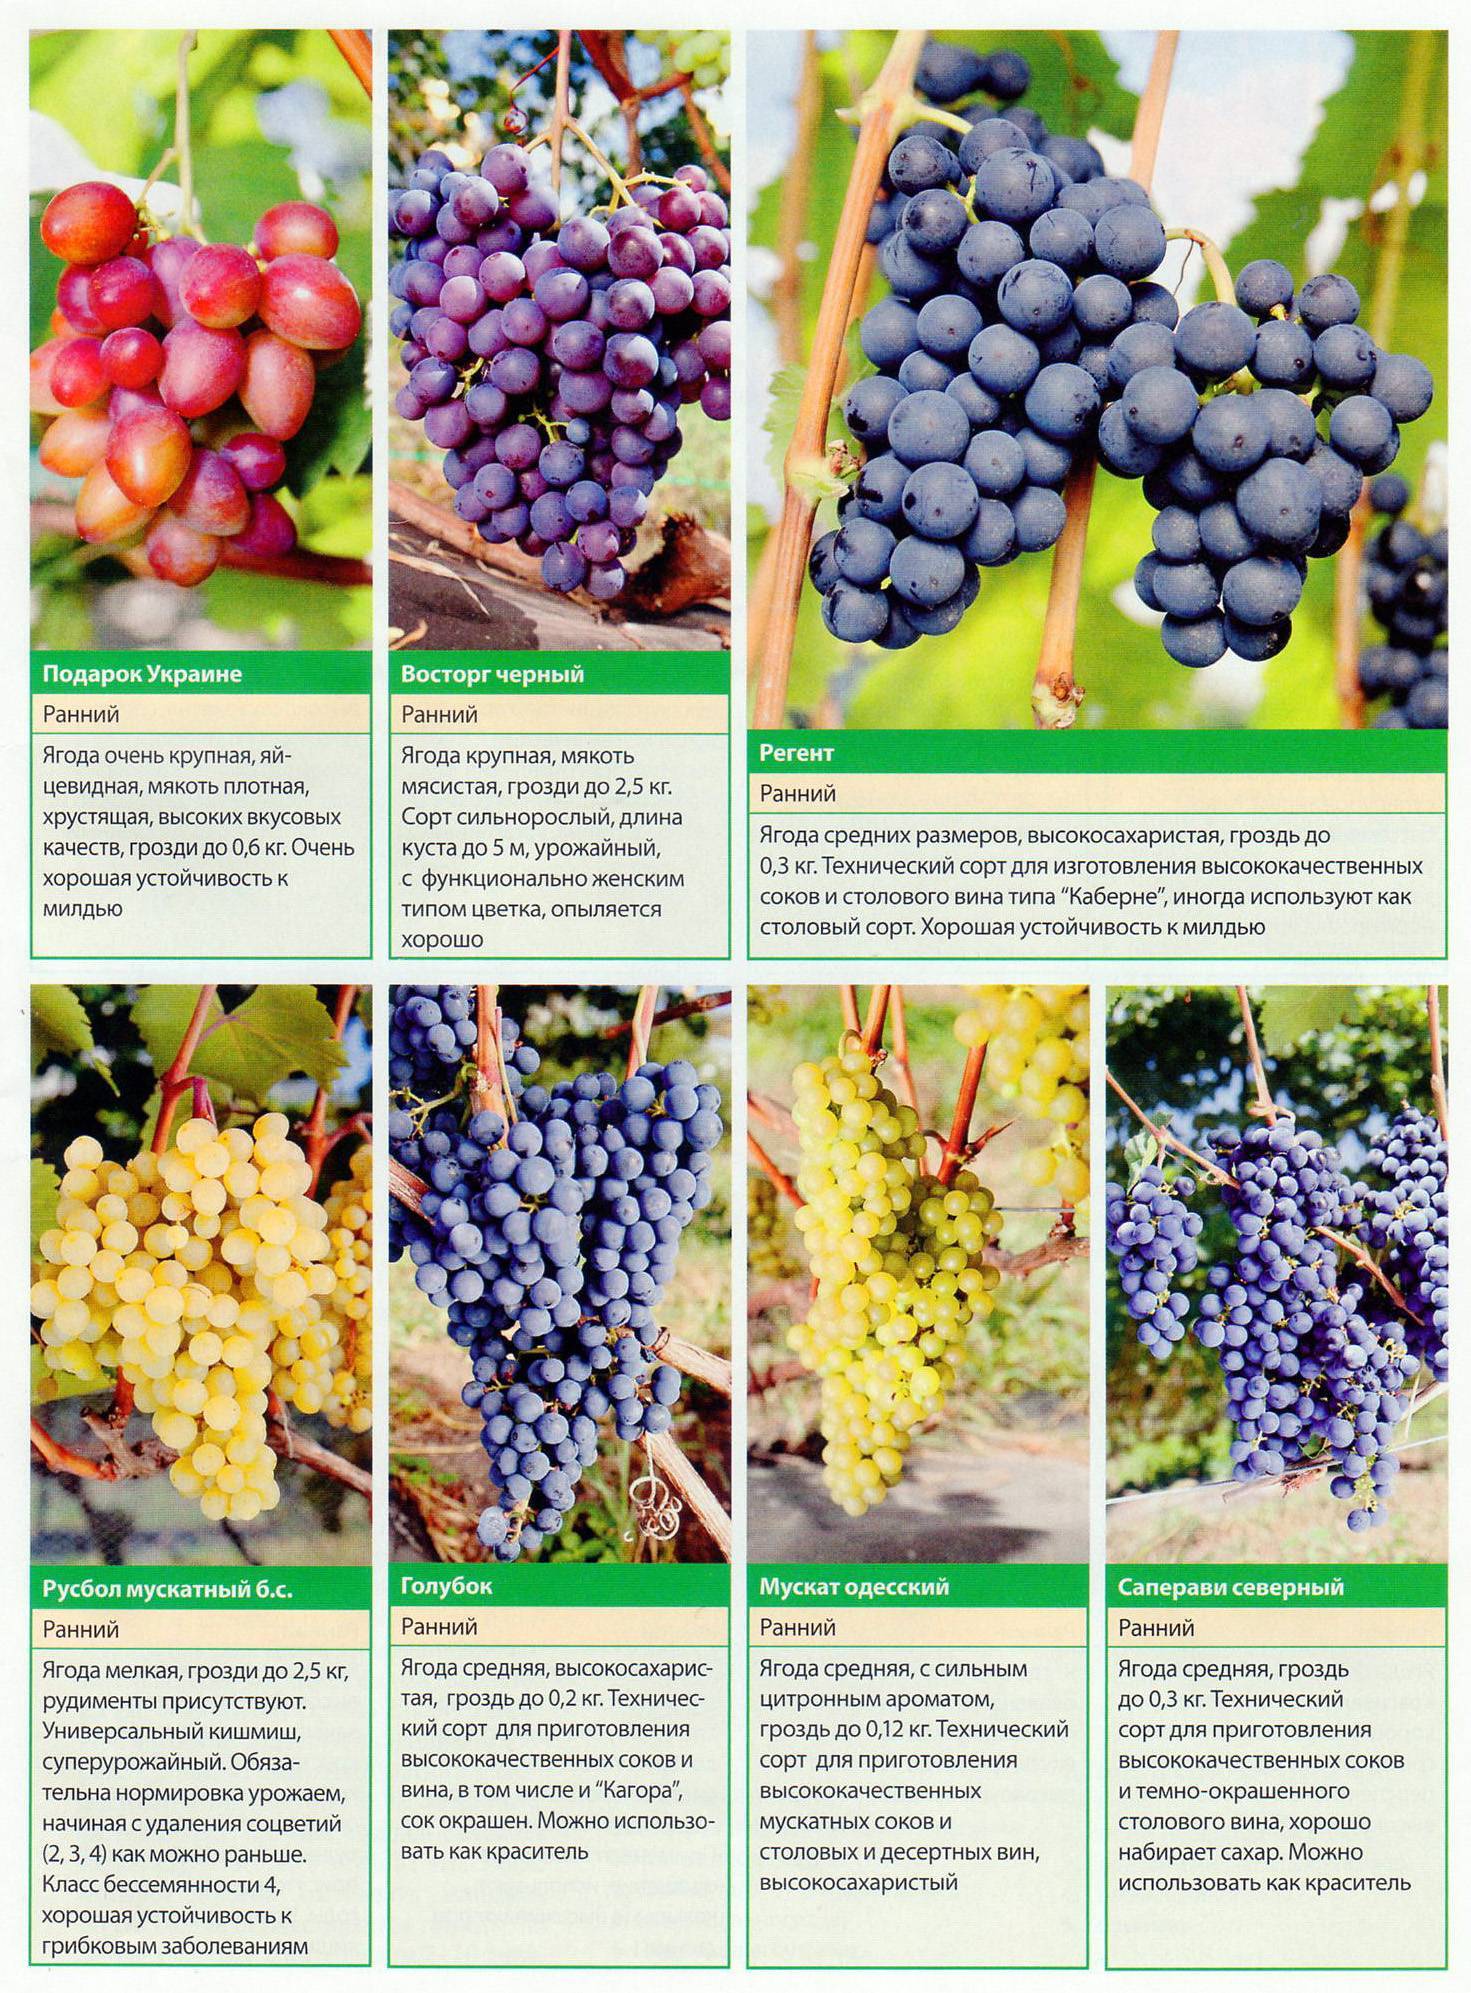 Сорт винограда ркацители: описание и характеристики, посадка и уход